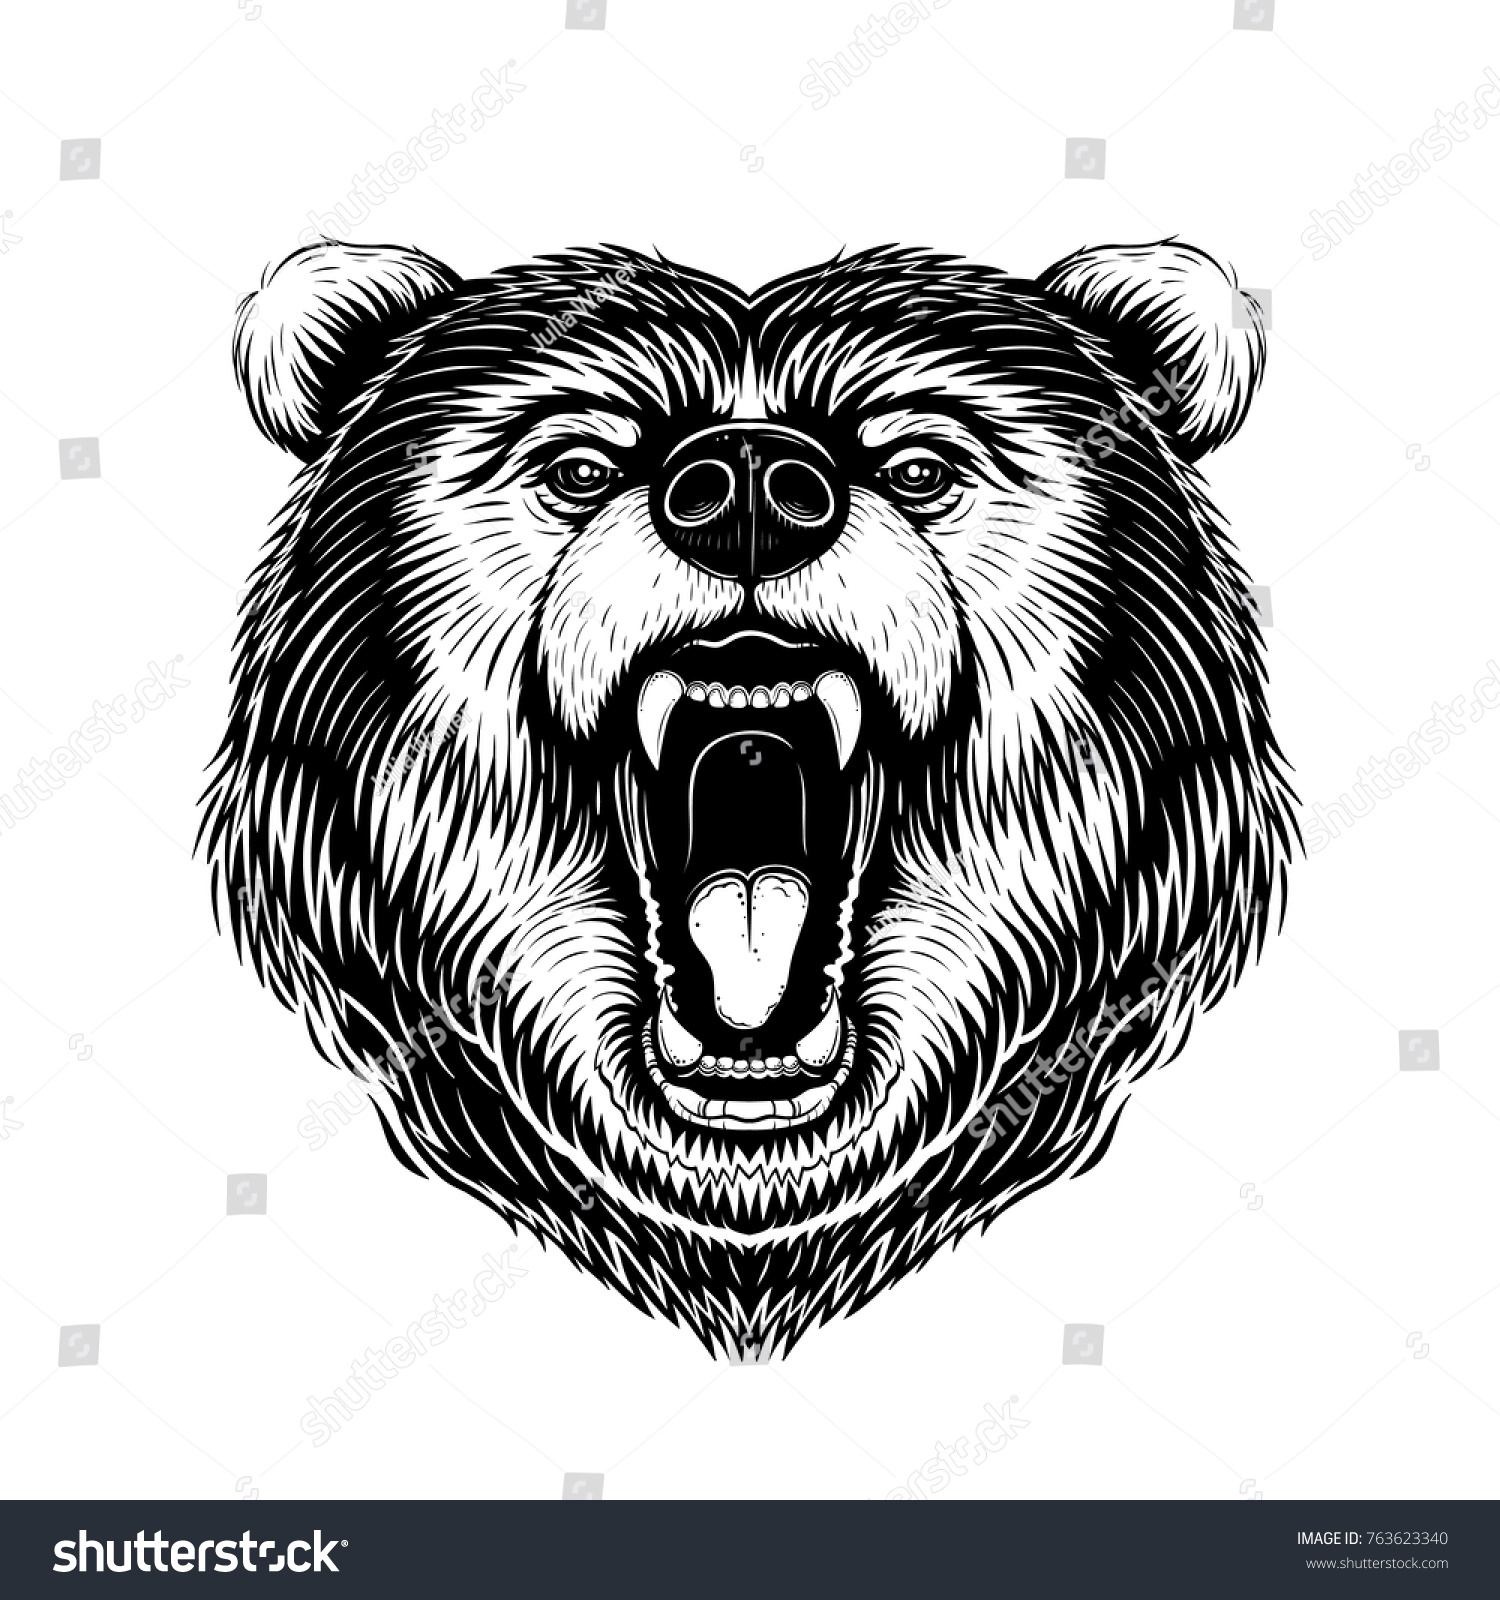 白黒のベクター画像クマの頭のイラスト のベクター画像素材 ロイヤリティフリー